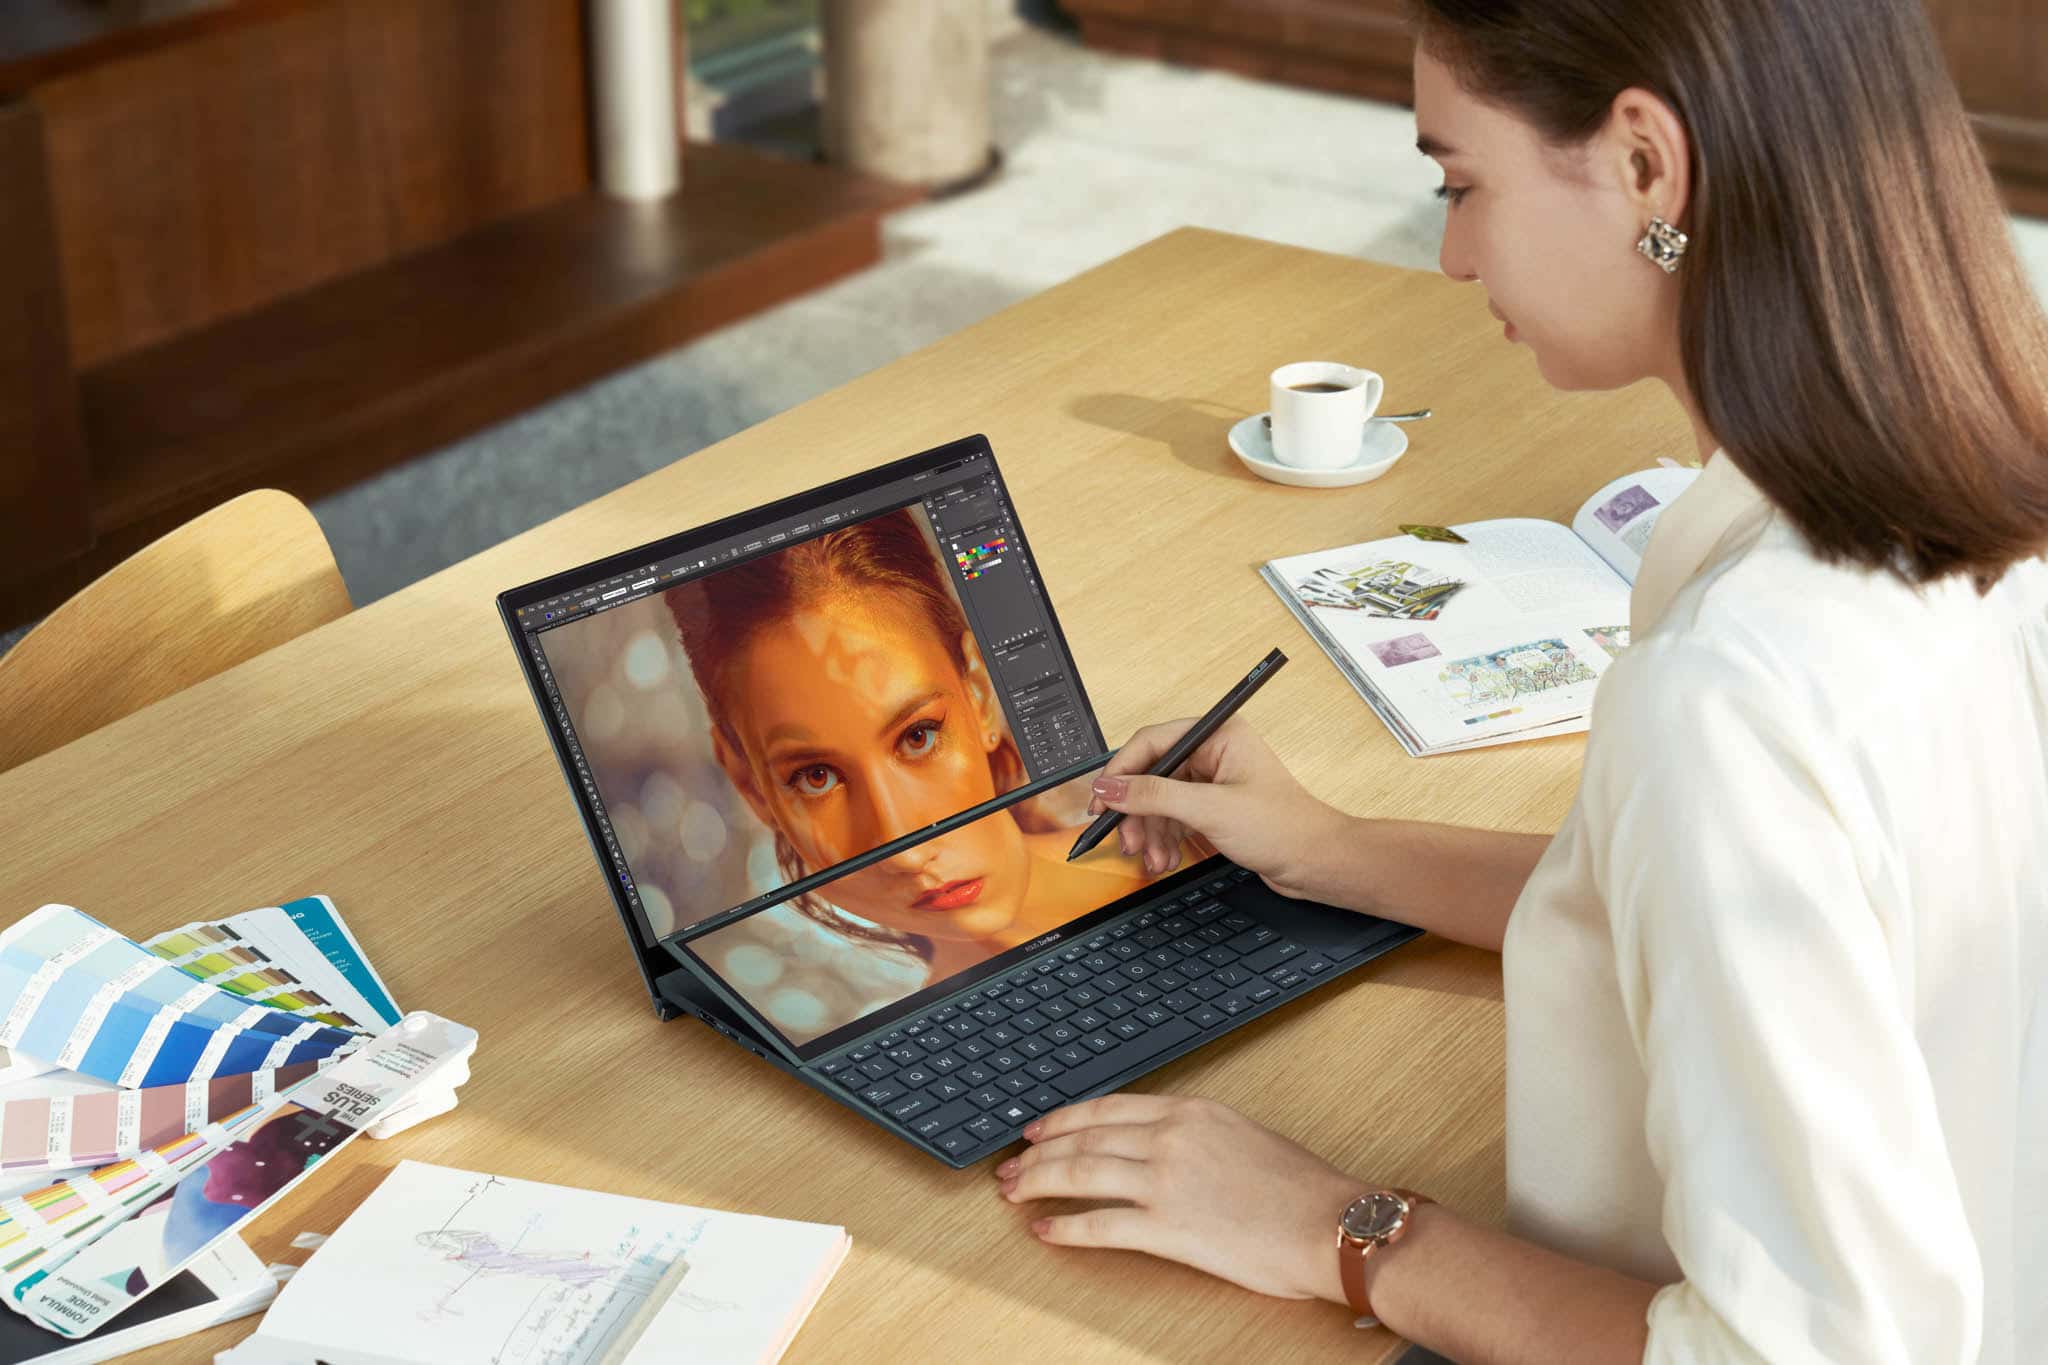 ASUS công bố dải sản phẩm ZenBook 2 màn hình mới nhất và màn ScreenPad Plus nghiêng tự động tại CES 2021